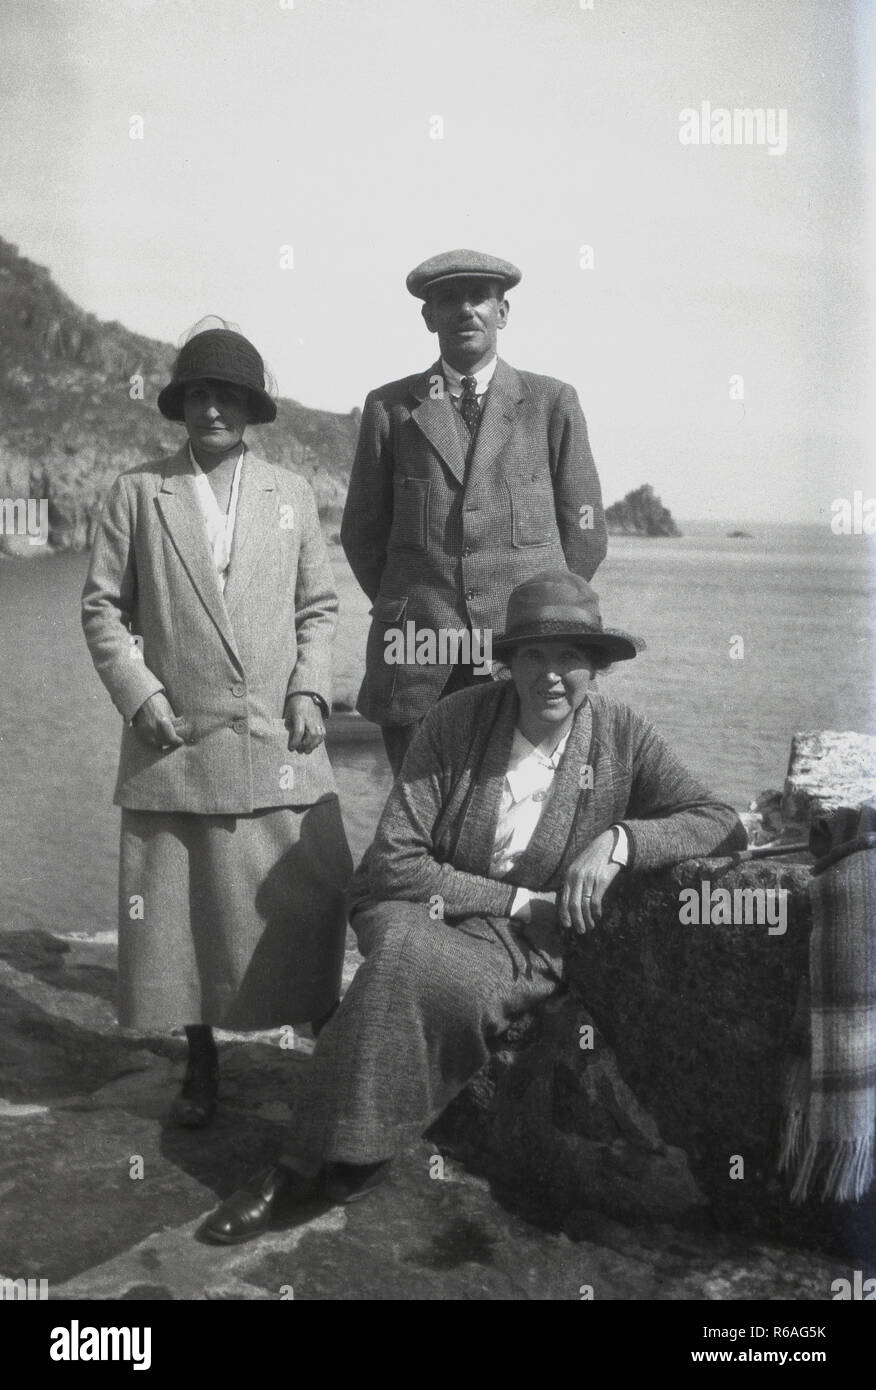 Années 1920, historique, un homme et deux femmes posent pour une photo de la mer portent des vêtements et des chapeaux de l'époque, Angleterre, Royaume-Uni. Banque D'Images